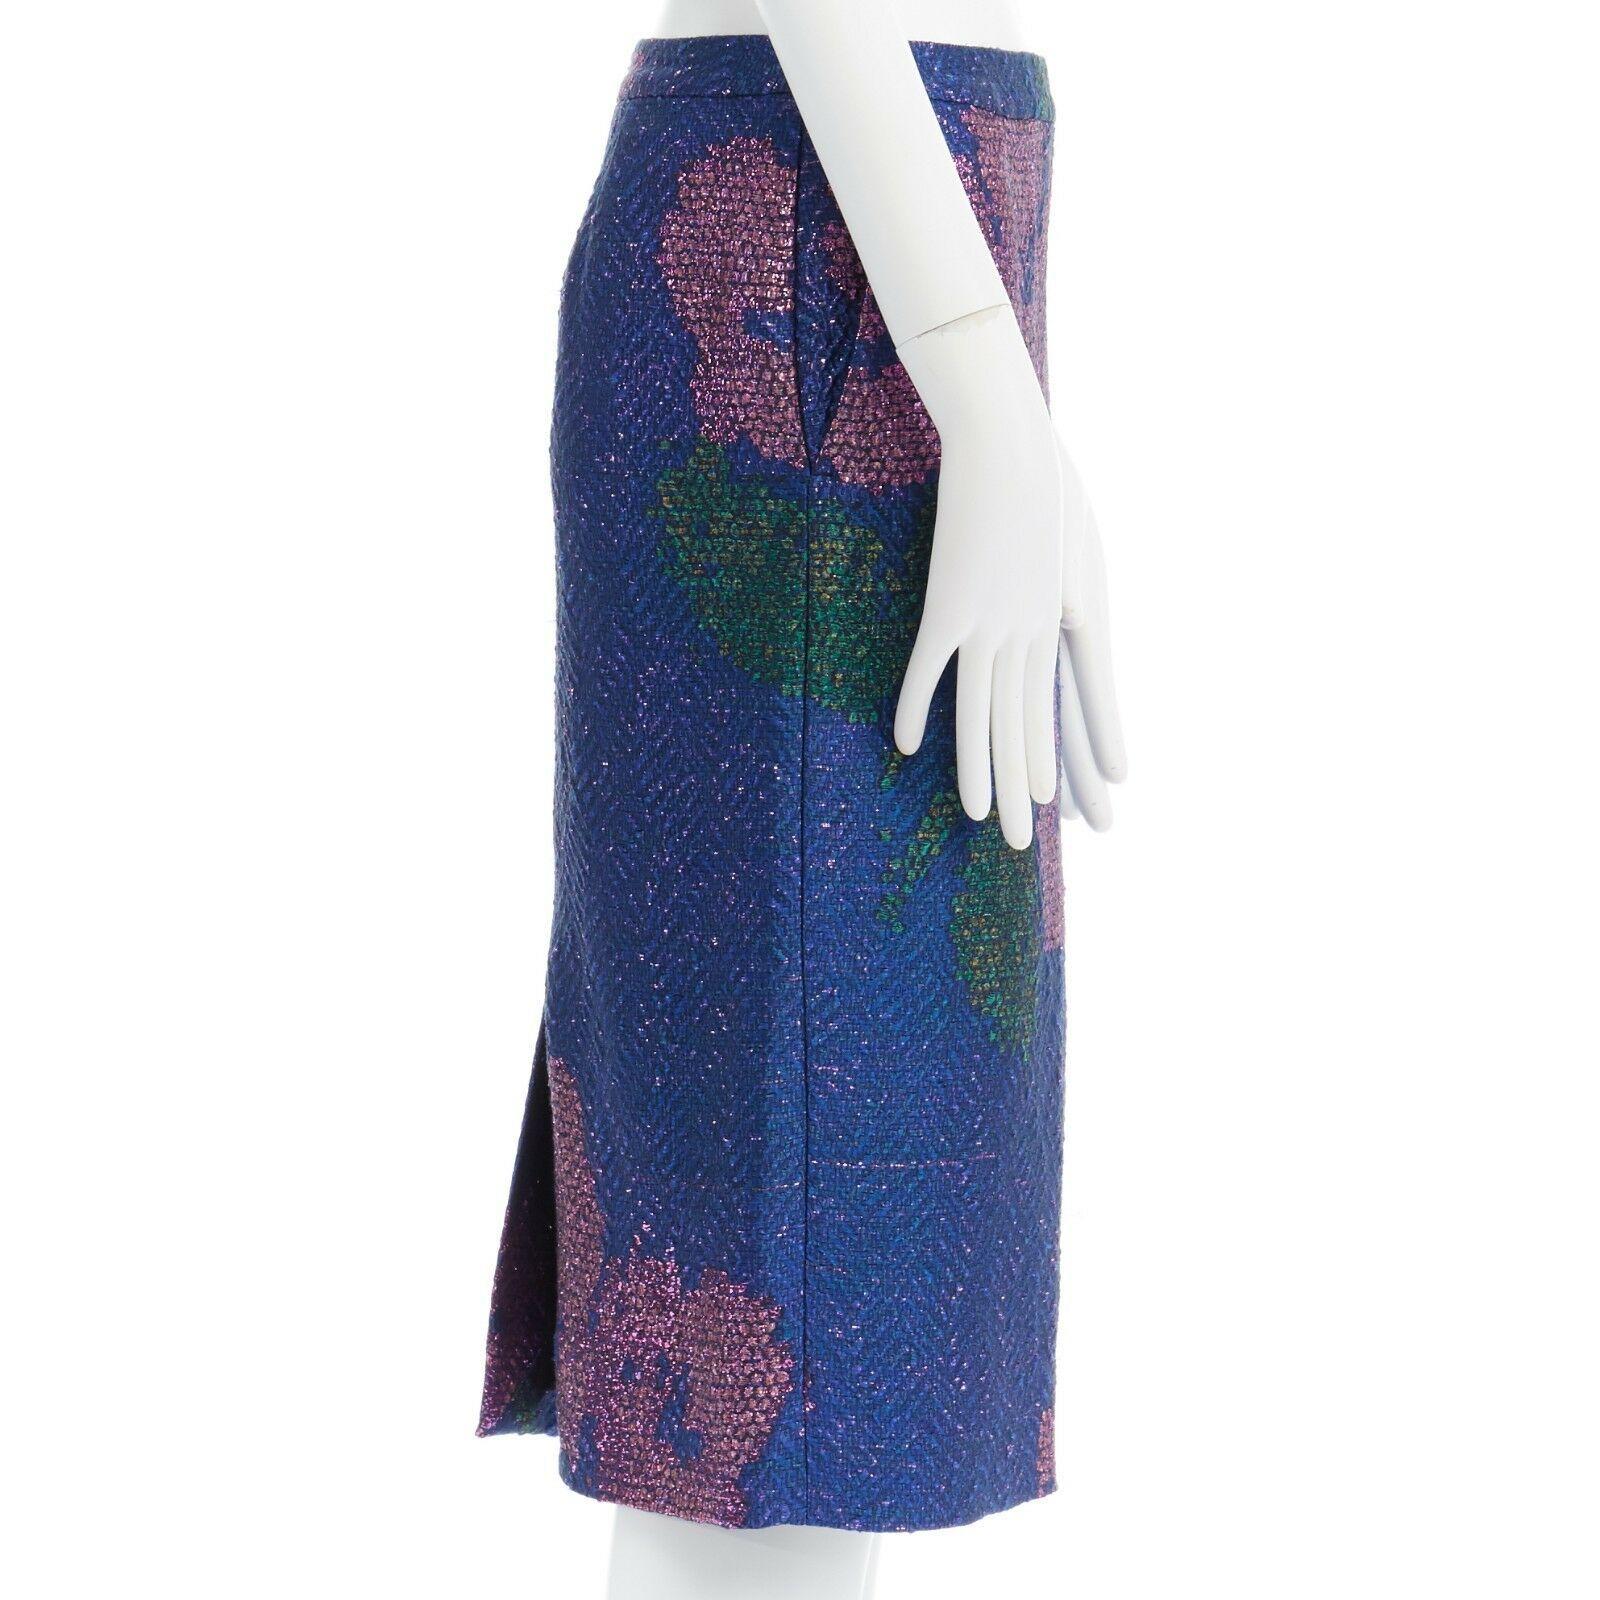 new DRIES VAN NOTEN SS15 metallic blue pink floral chevron pencil skirt FR36 28